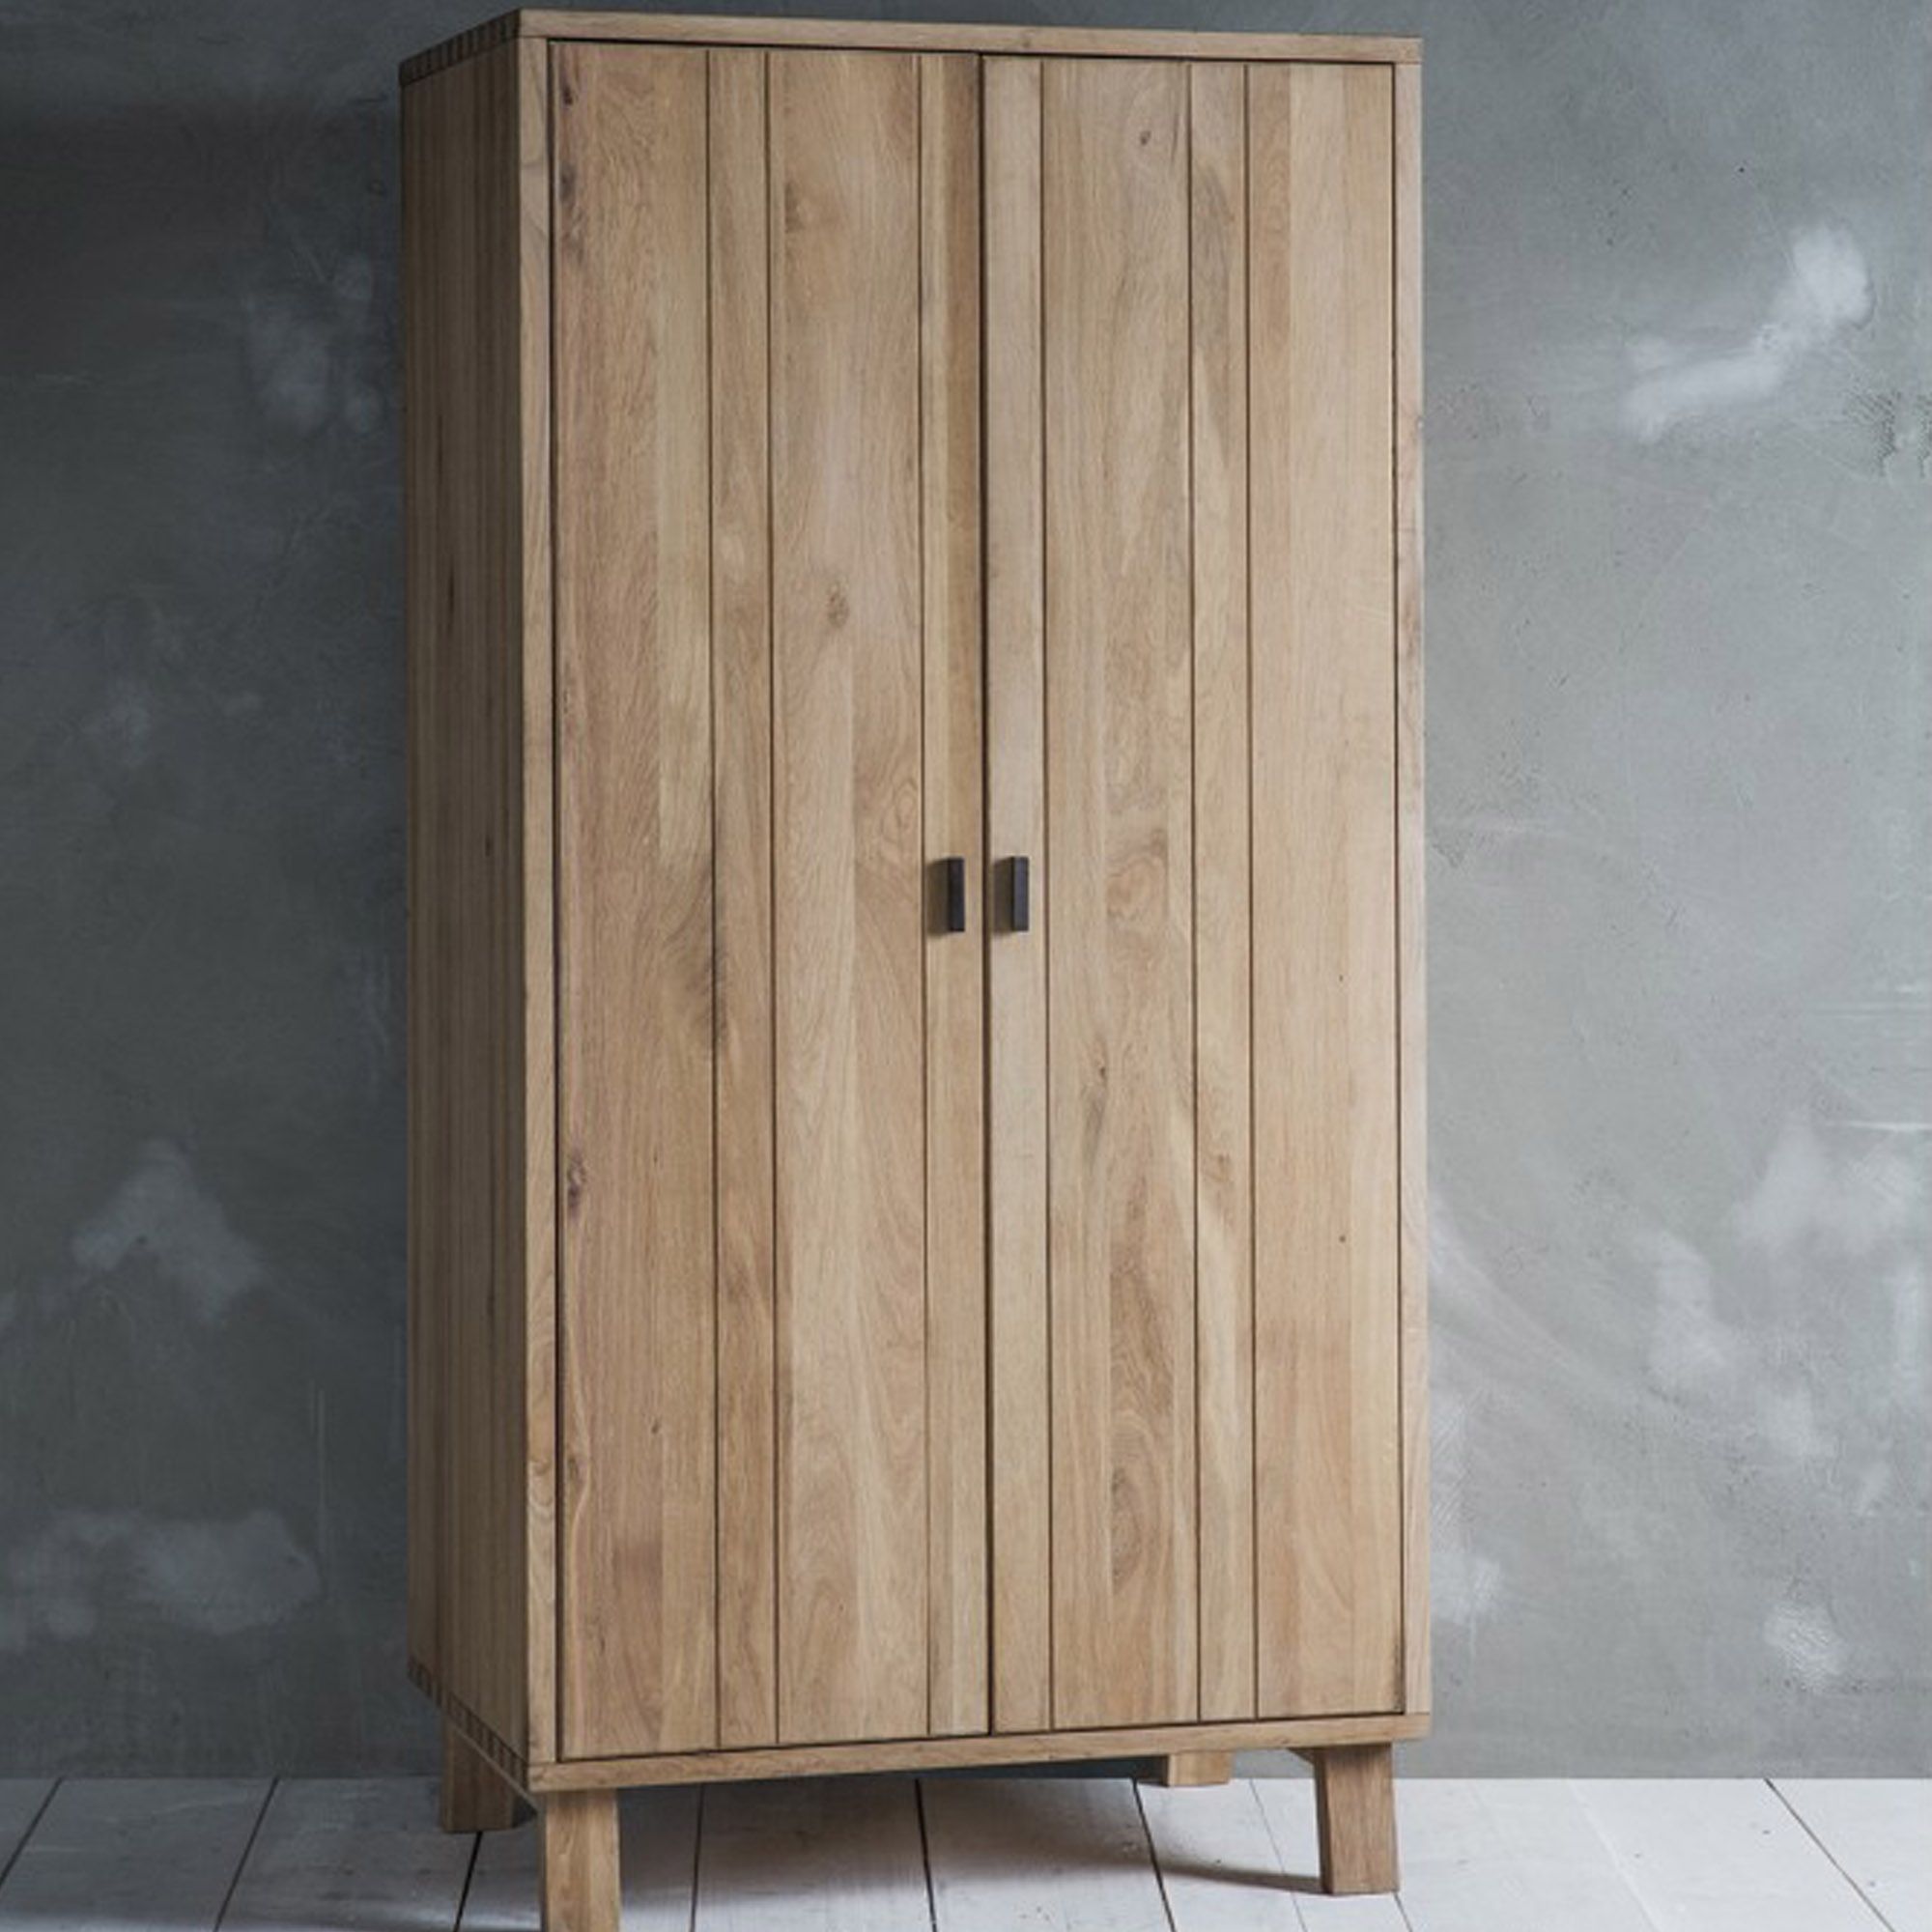 Kielder Wooden Wardrobe | Wooden Wardrobe | Modern Furniture With Regard To Wooden Wardrobes (View 12 of 15)